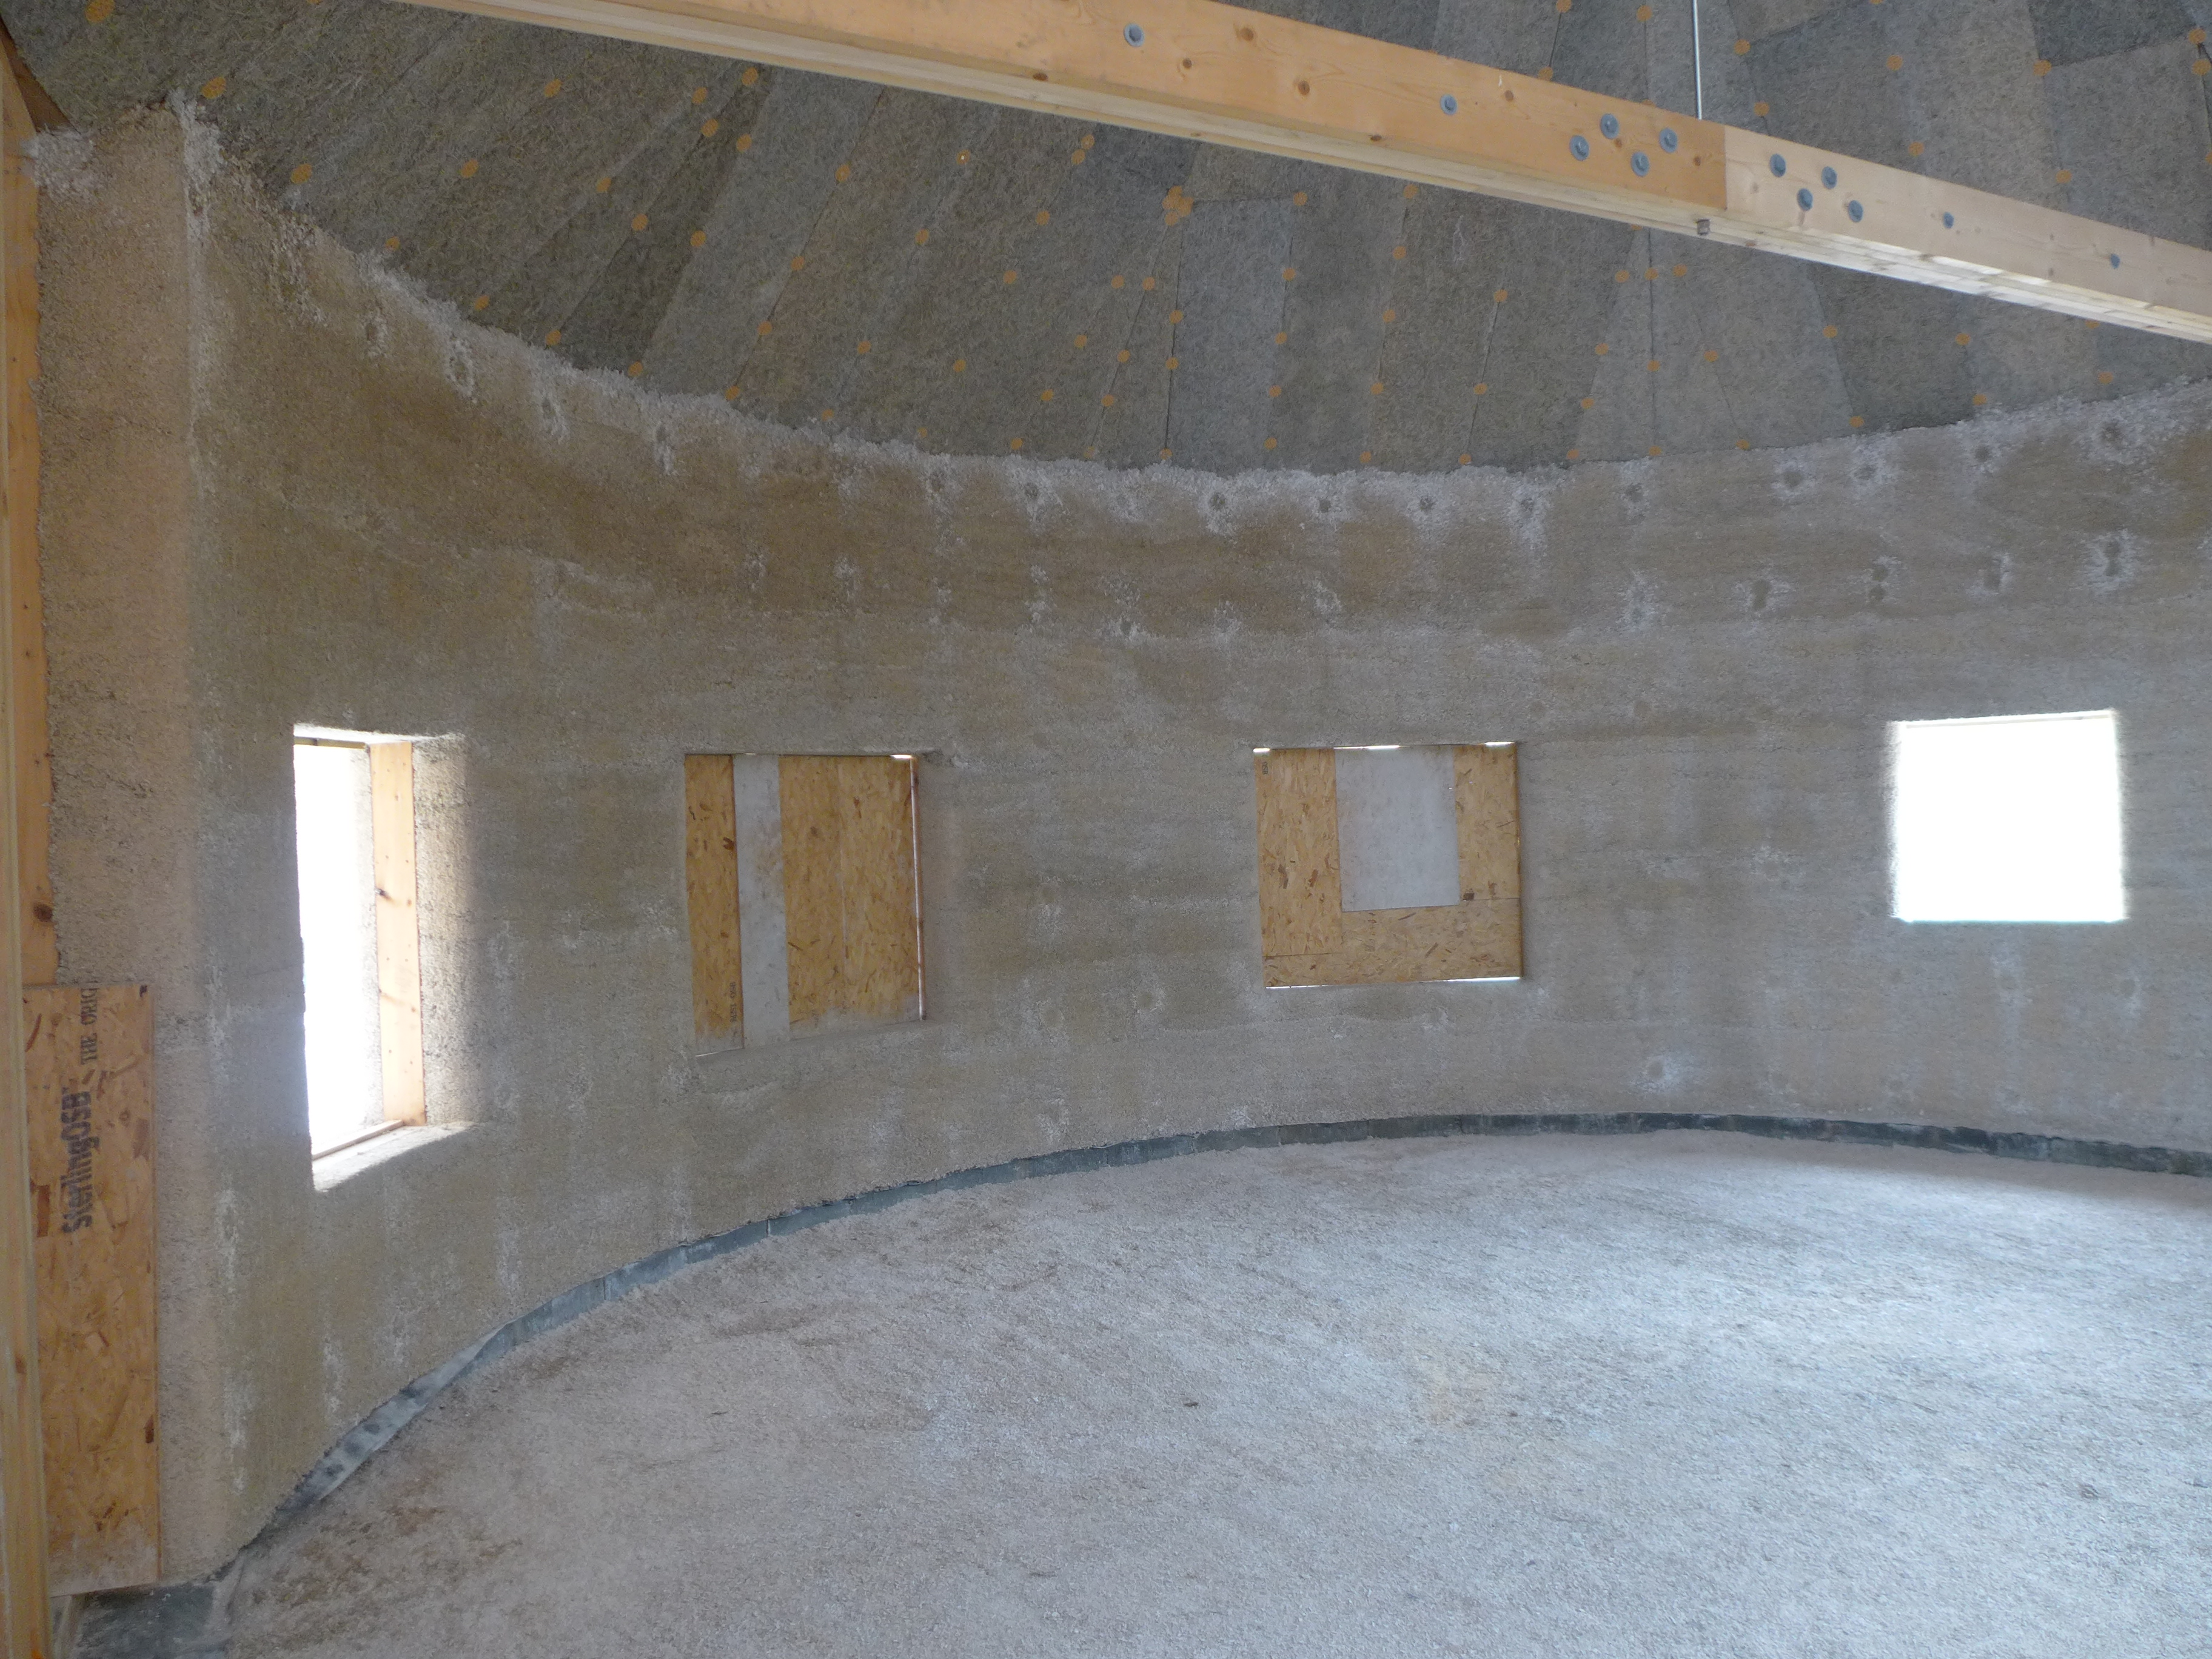 internal view of hempcrete construction with hempcrete walls, roof and floor